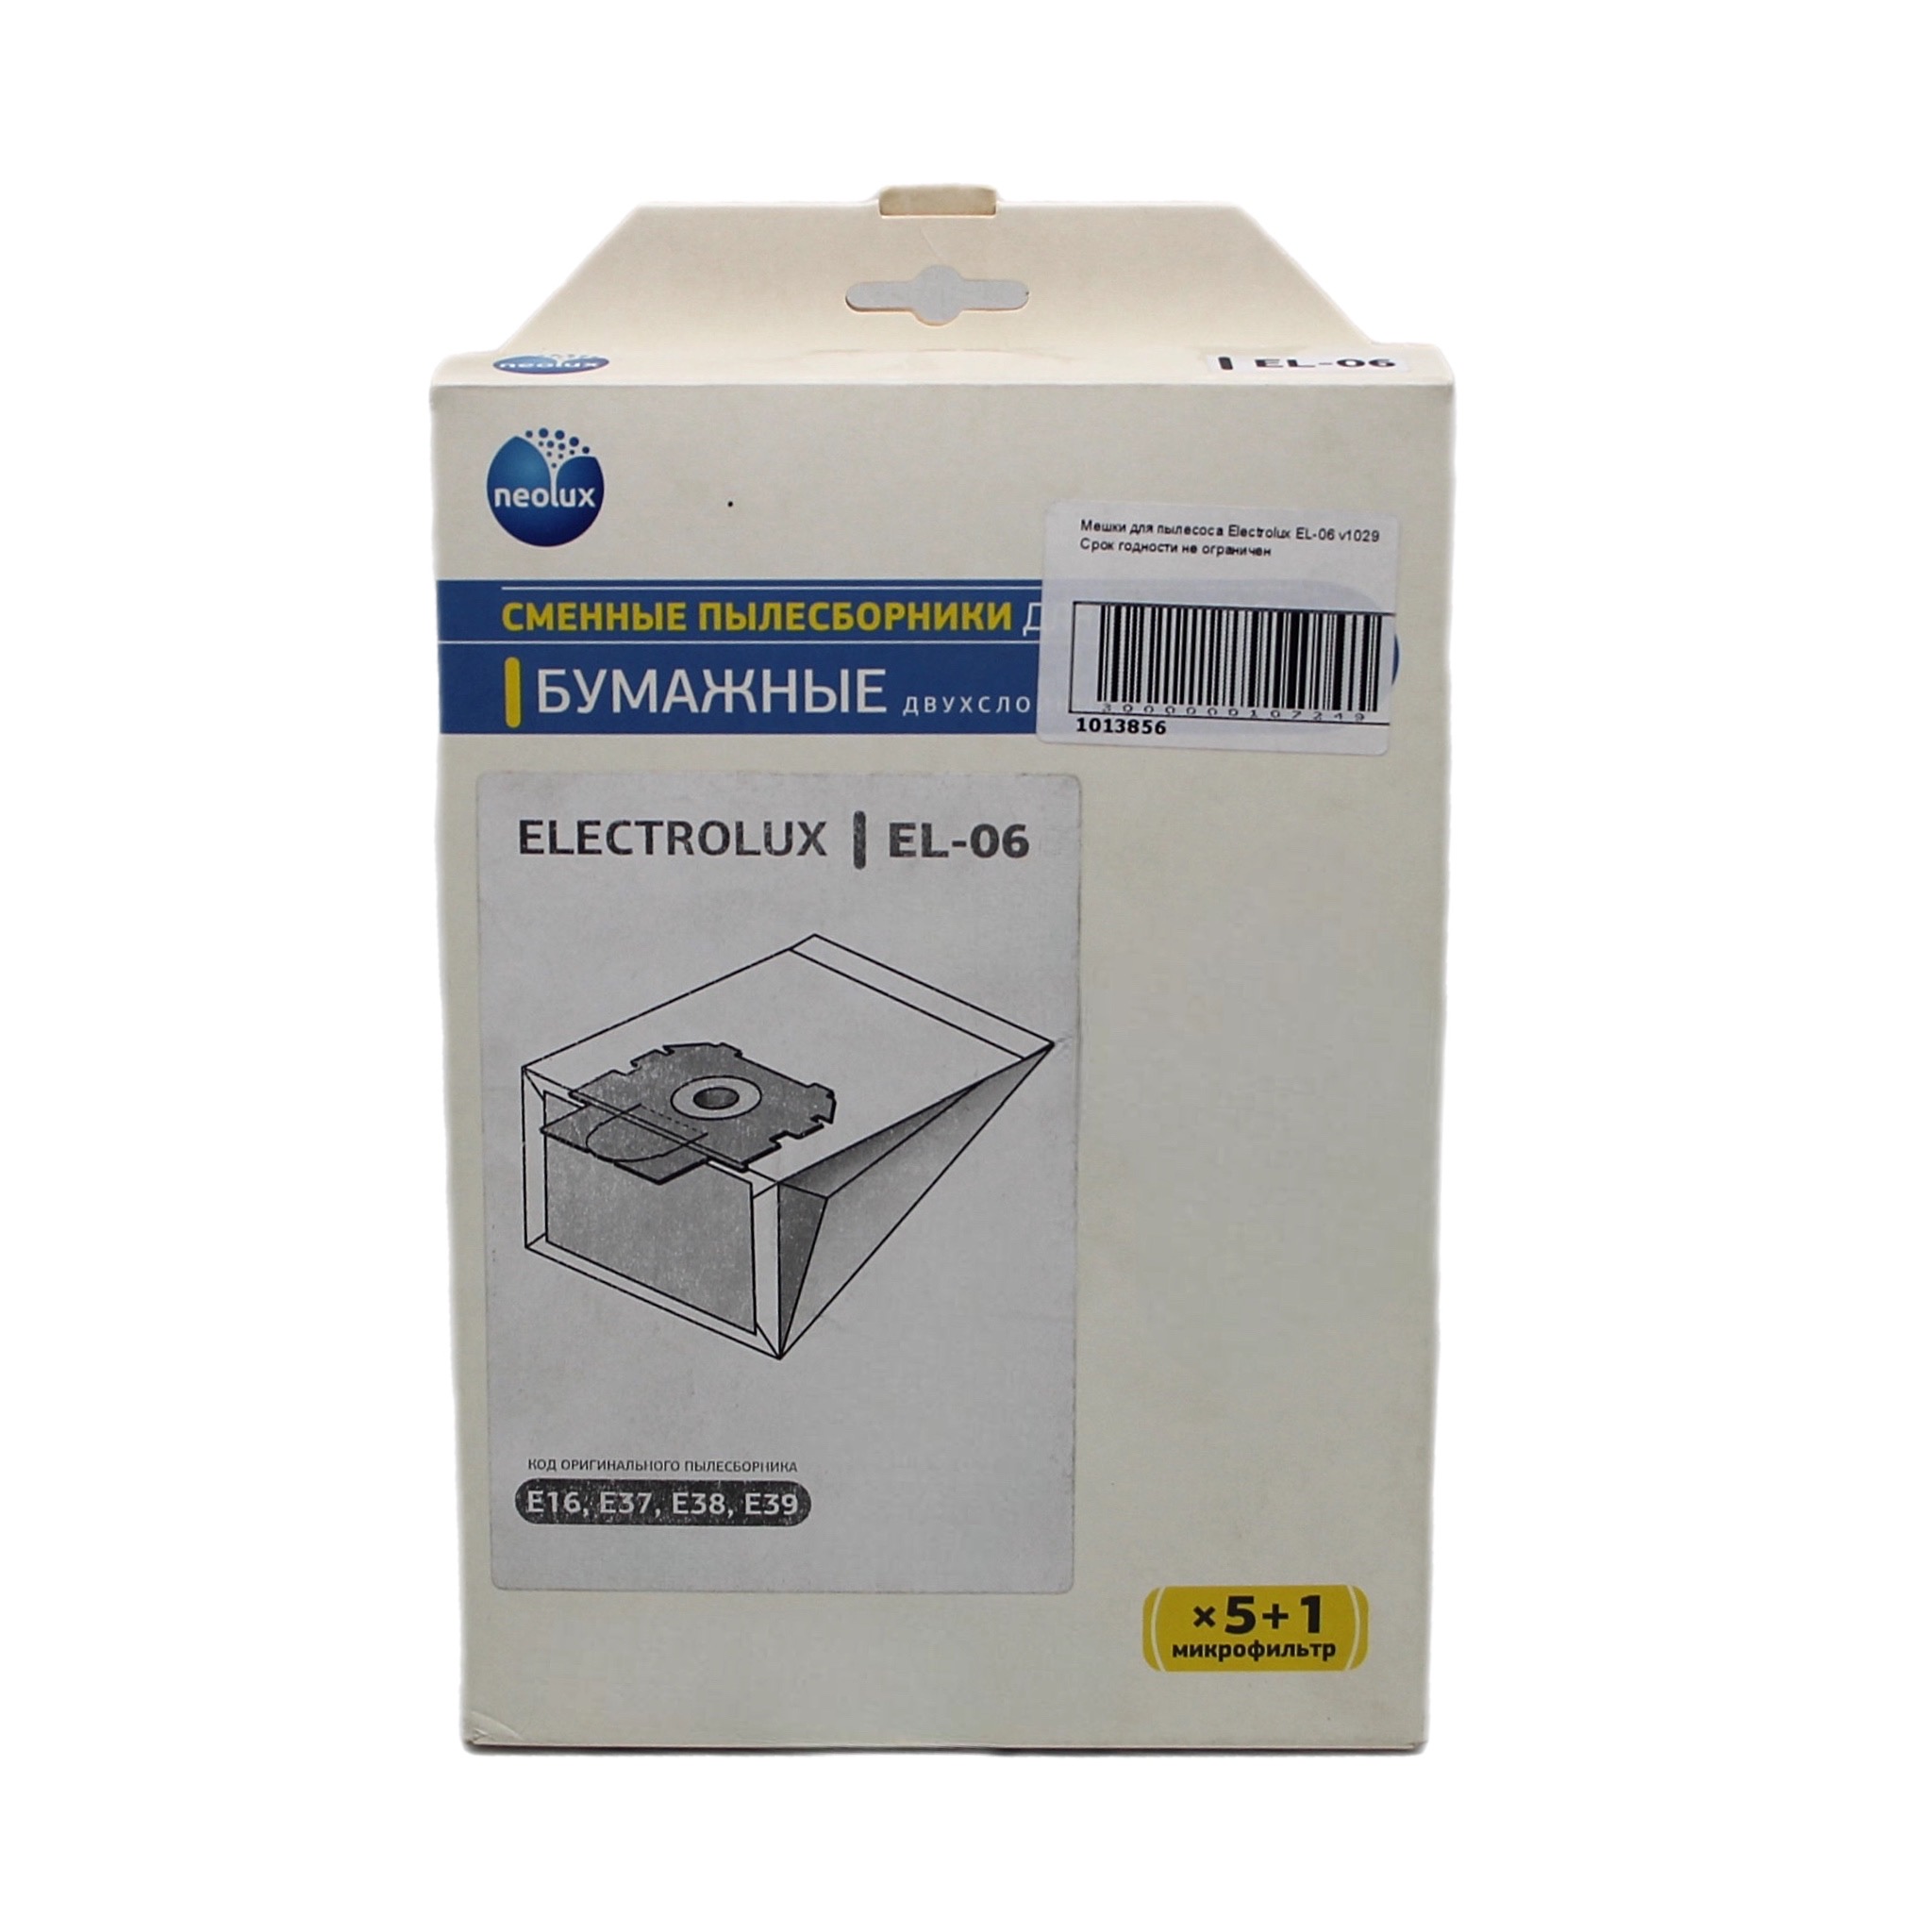 Мешок для бытового пылесоса OEM EL-06 пылесборники бумажные topperr sm 7 5шт микрофильтр